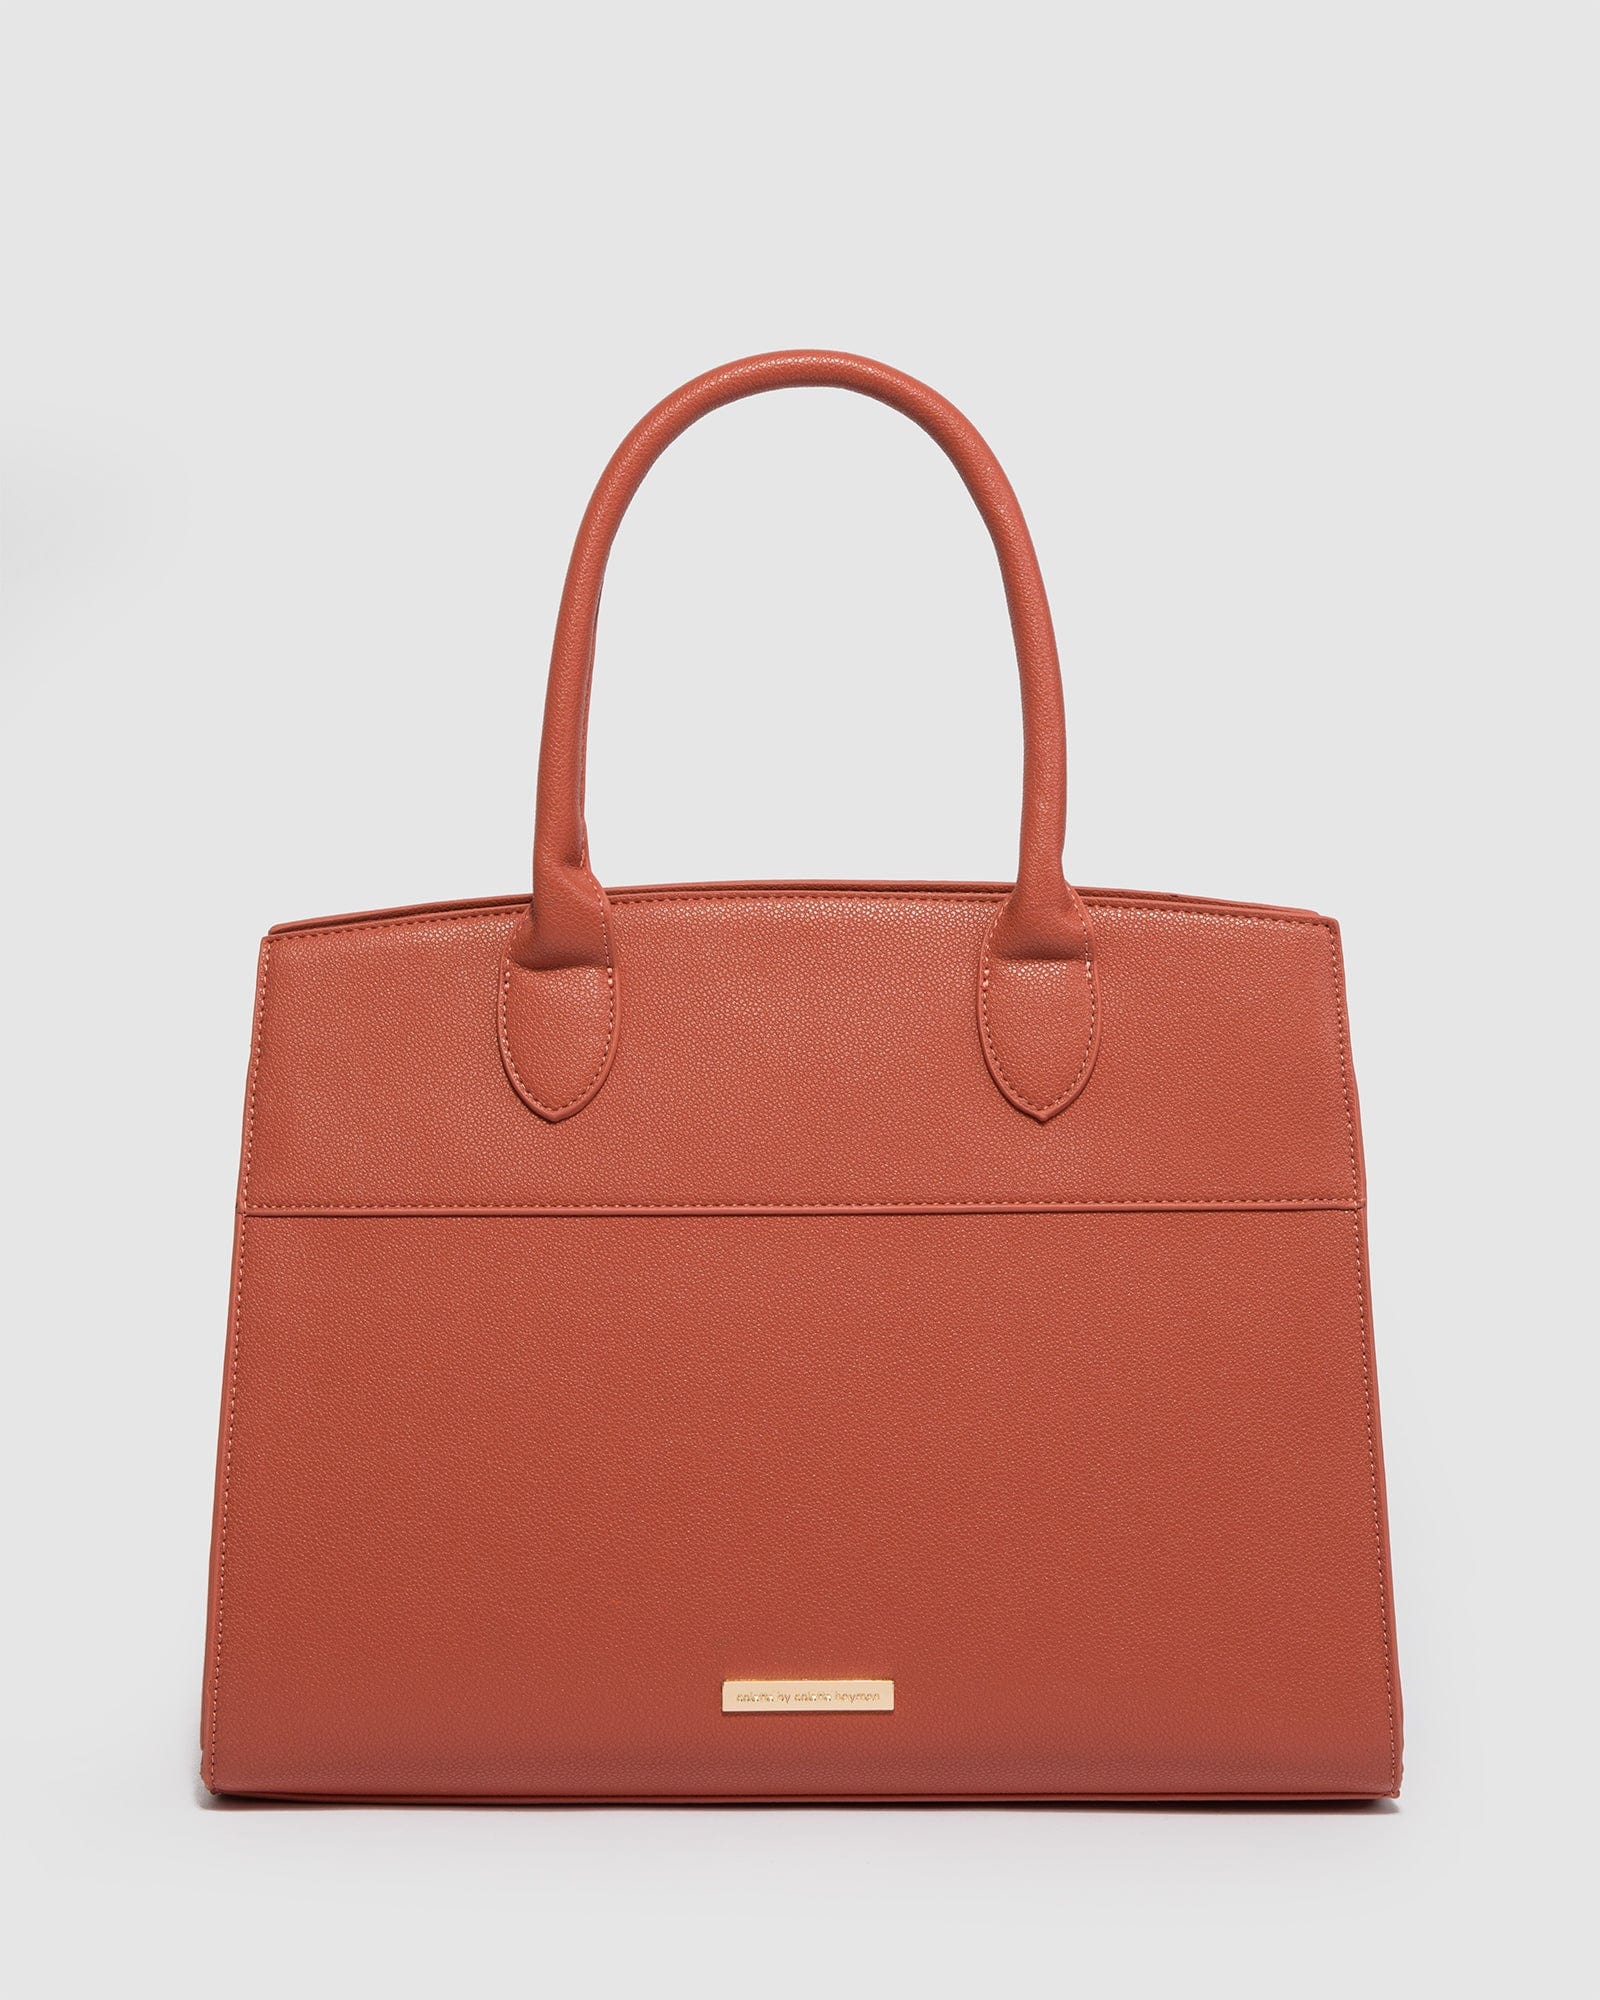 Colette hayman hand bag | Colette, Bags, Bags logo